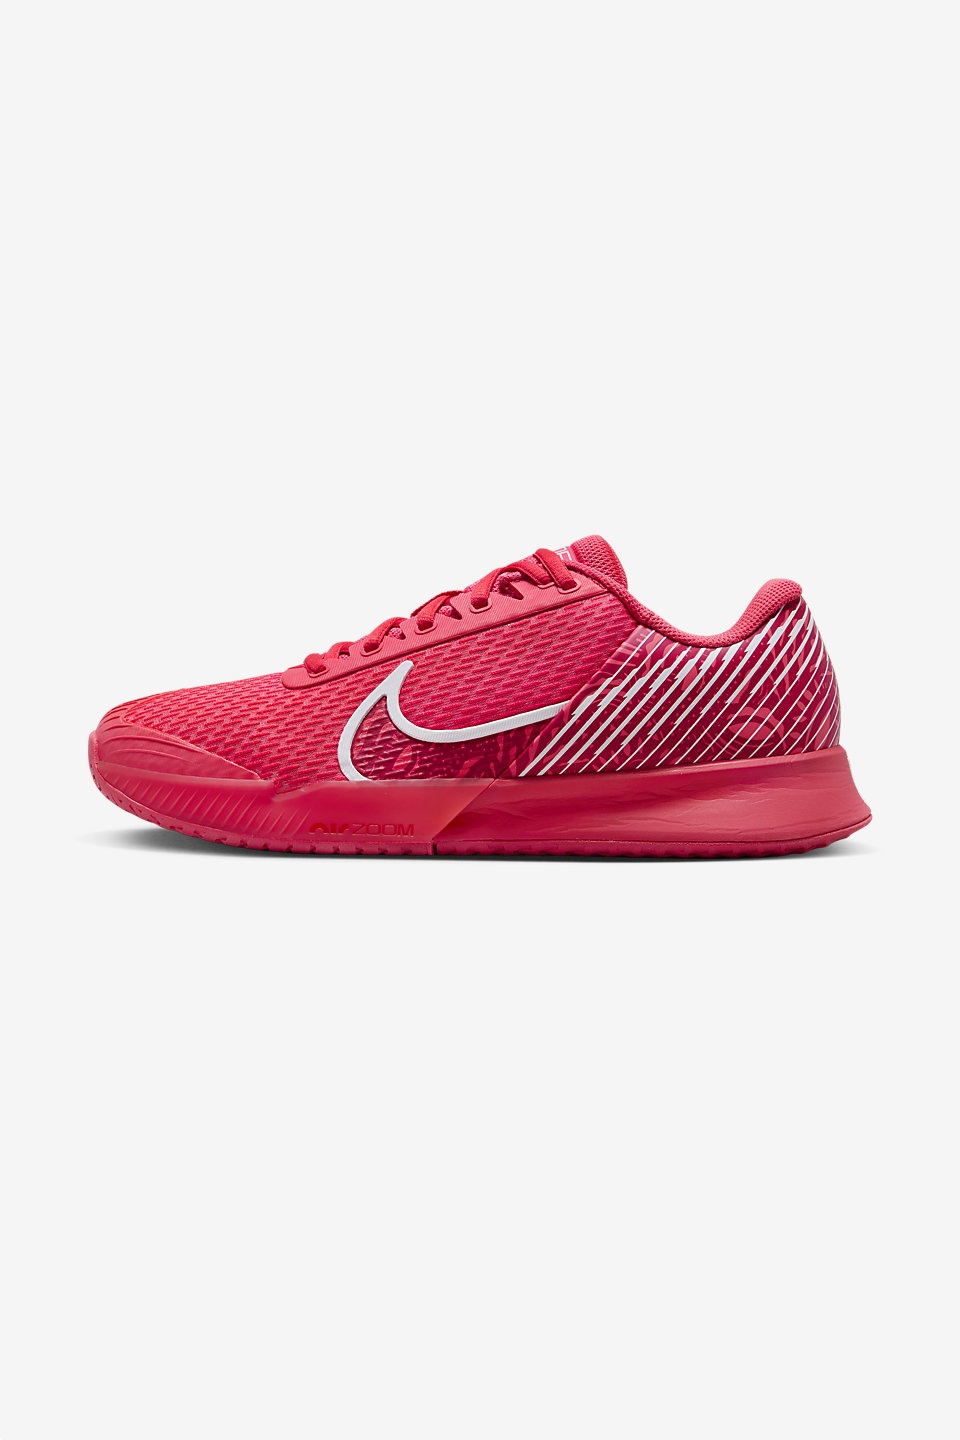 NIKE - NikeCourt Air Zoom Vapor Pro 2 Sert Kort Erkek Tenis Ayakkabısı 